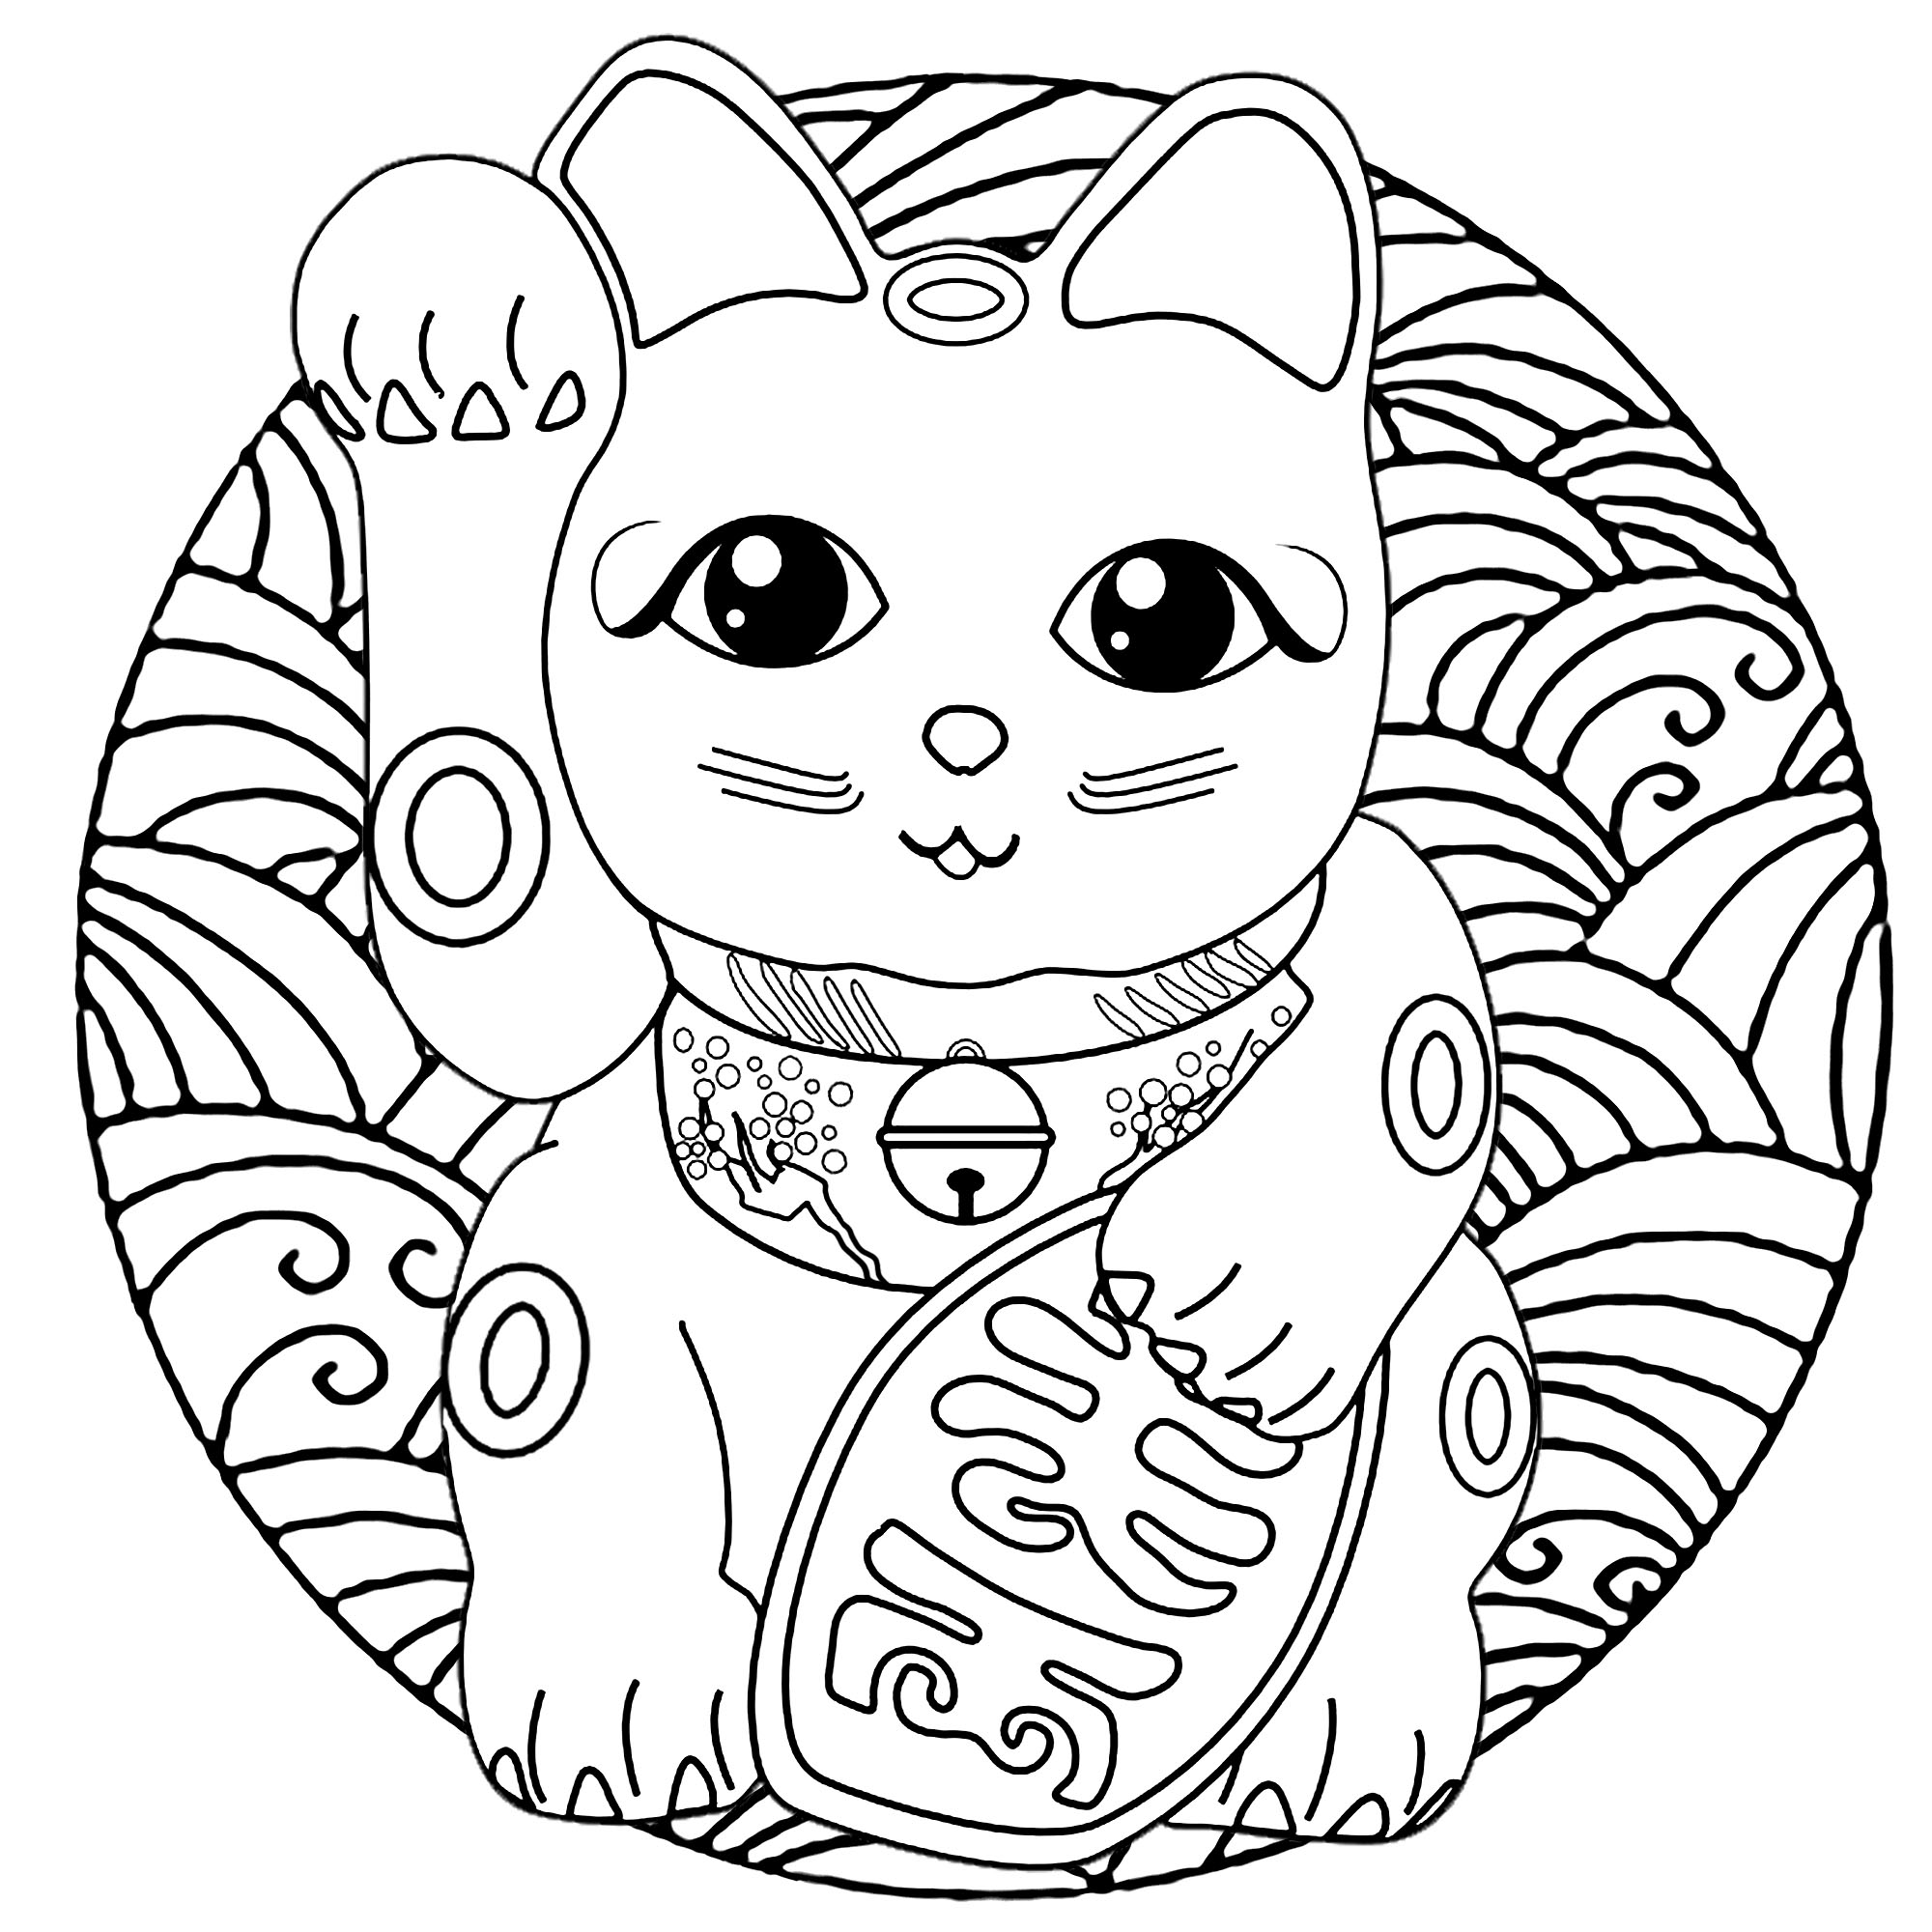 Eine süße Maneki Neko Katze (japanische Figur: Glücksbringer, Talisman) in einem Mandala voller Wellen (japanischer Grafikstil), Künstler : Art'Isabelle